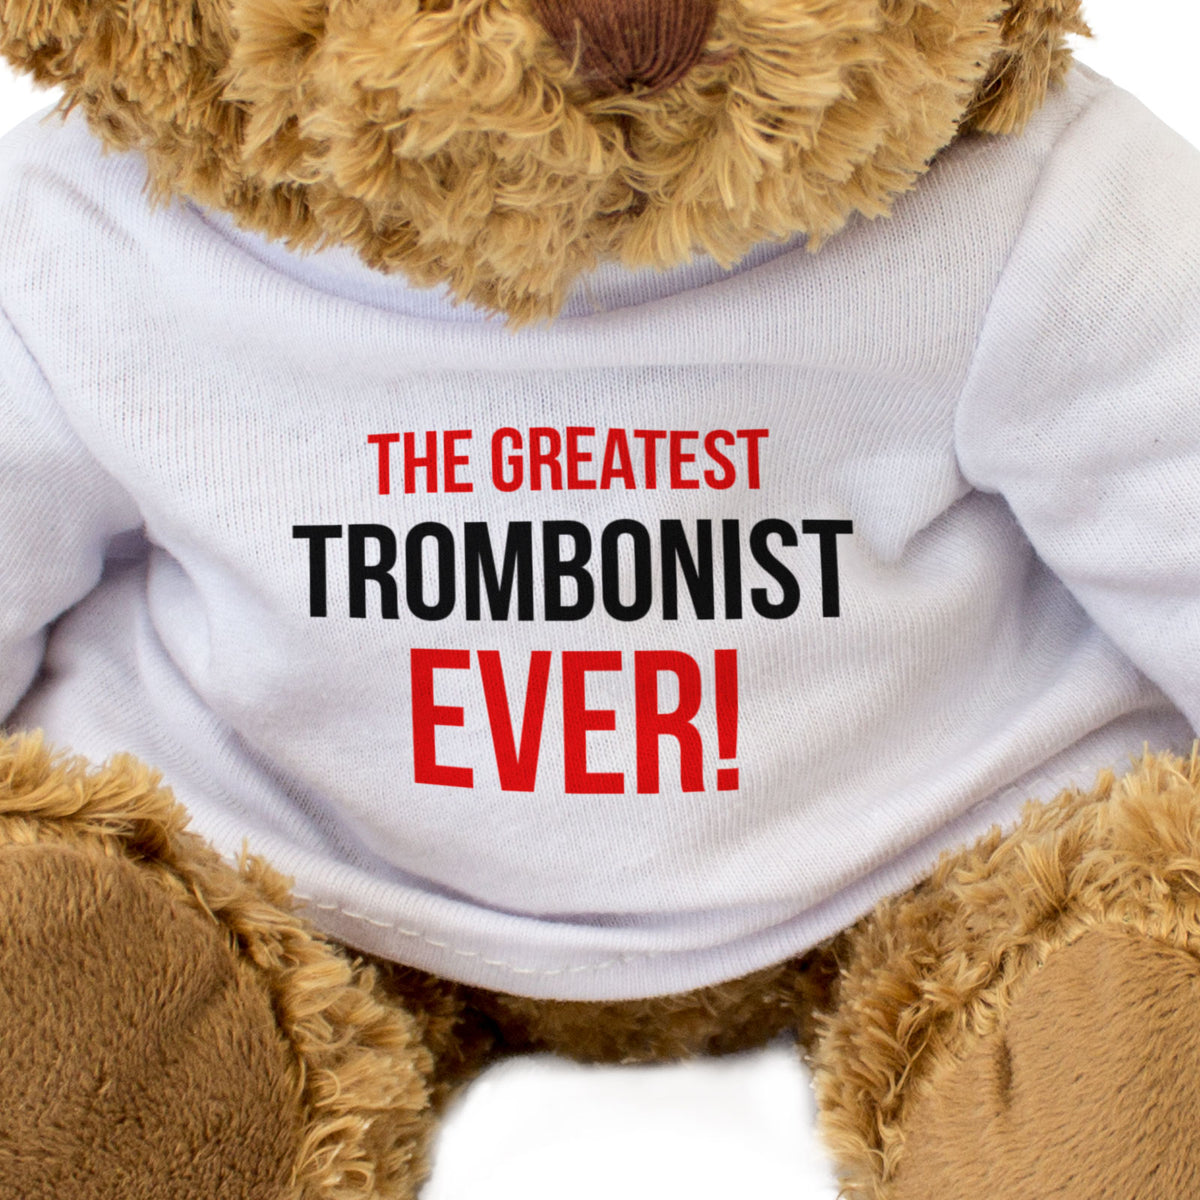 The Greatest Trombonist Ever - Teddy Bear